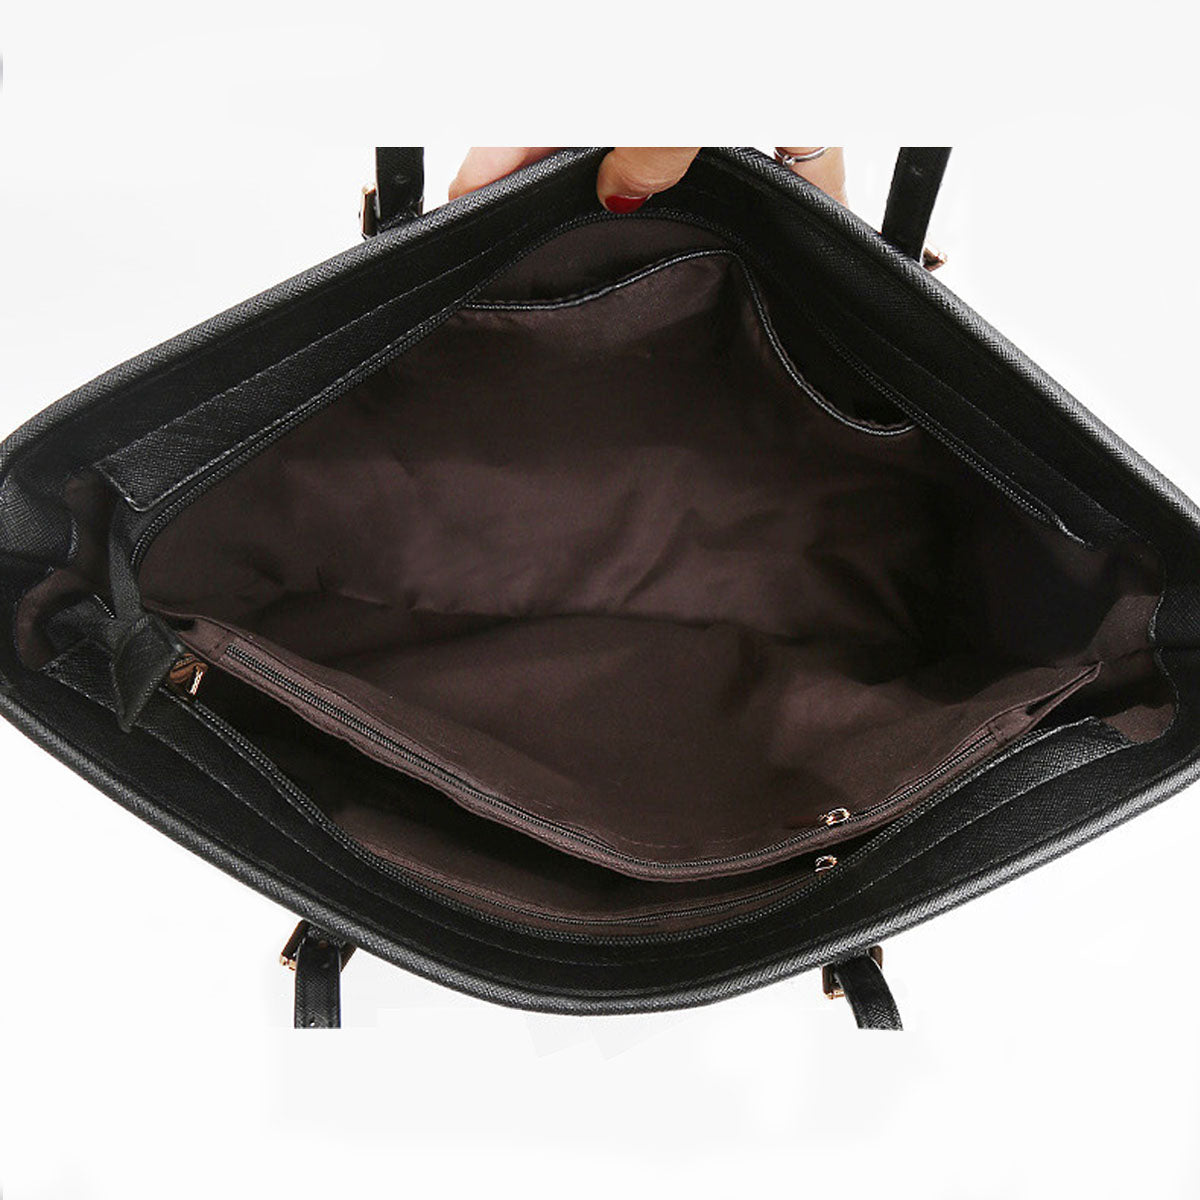 Brittany Spaniel Tote Bag V2